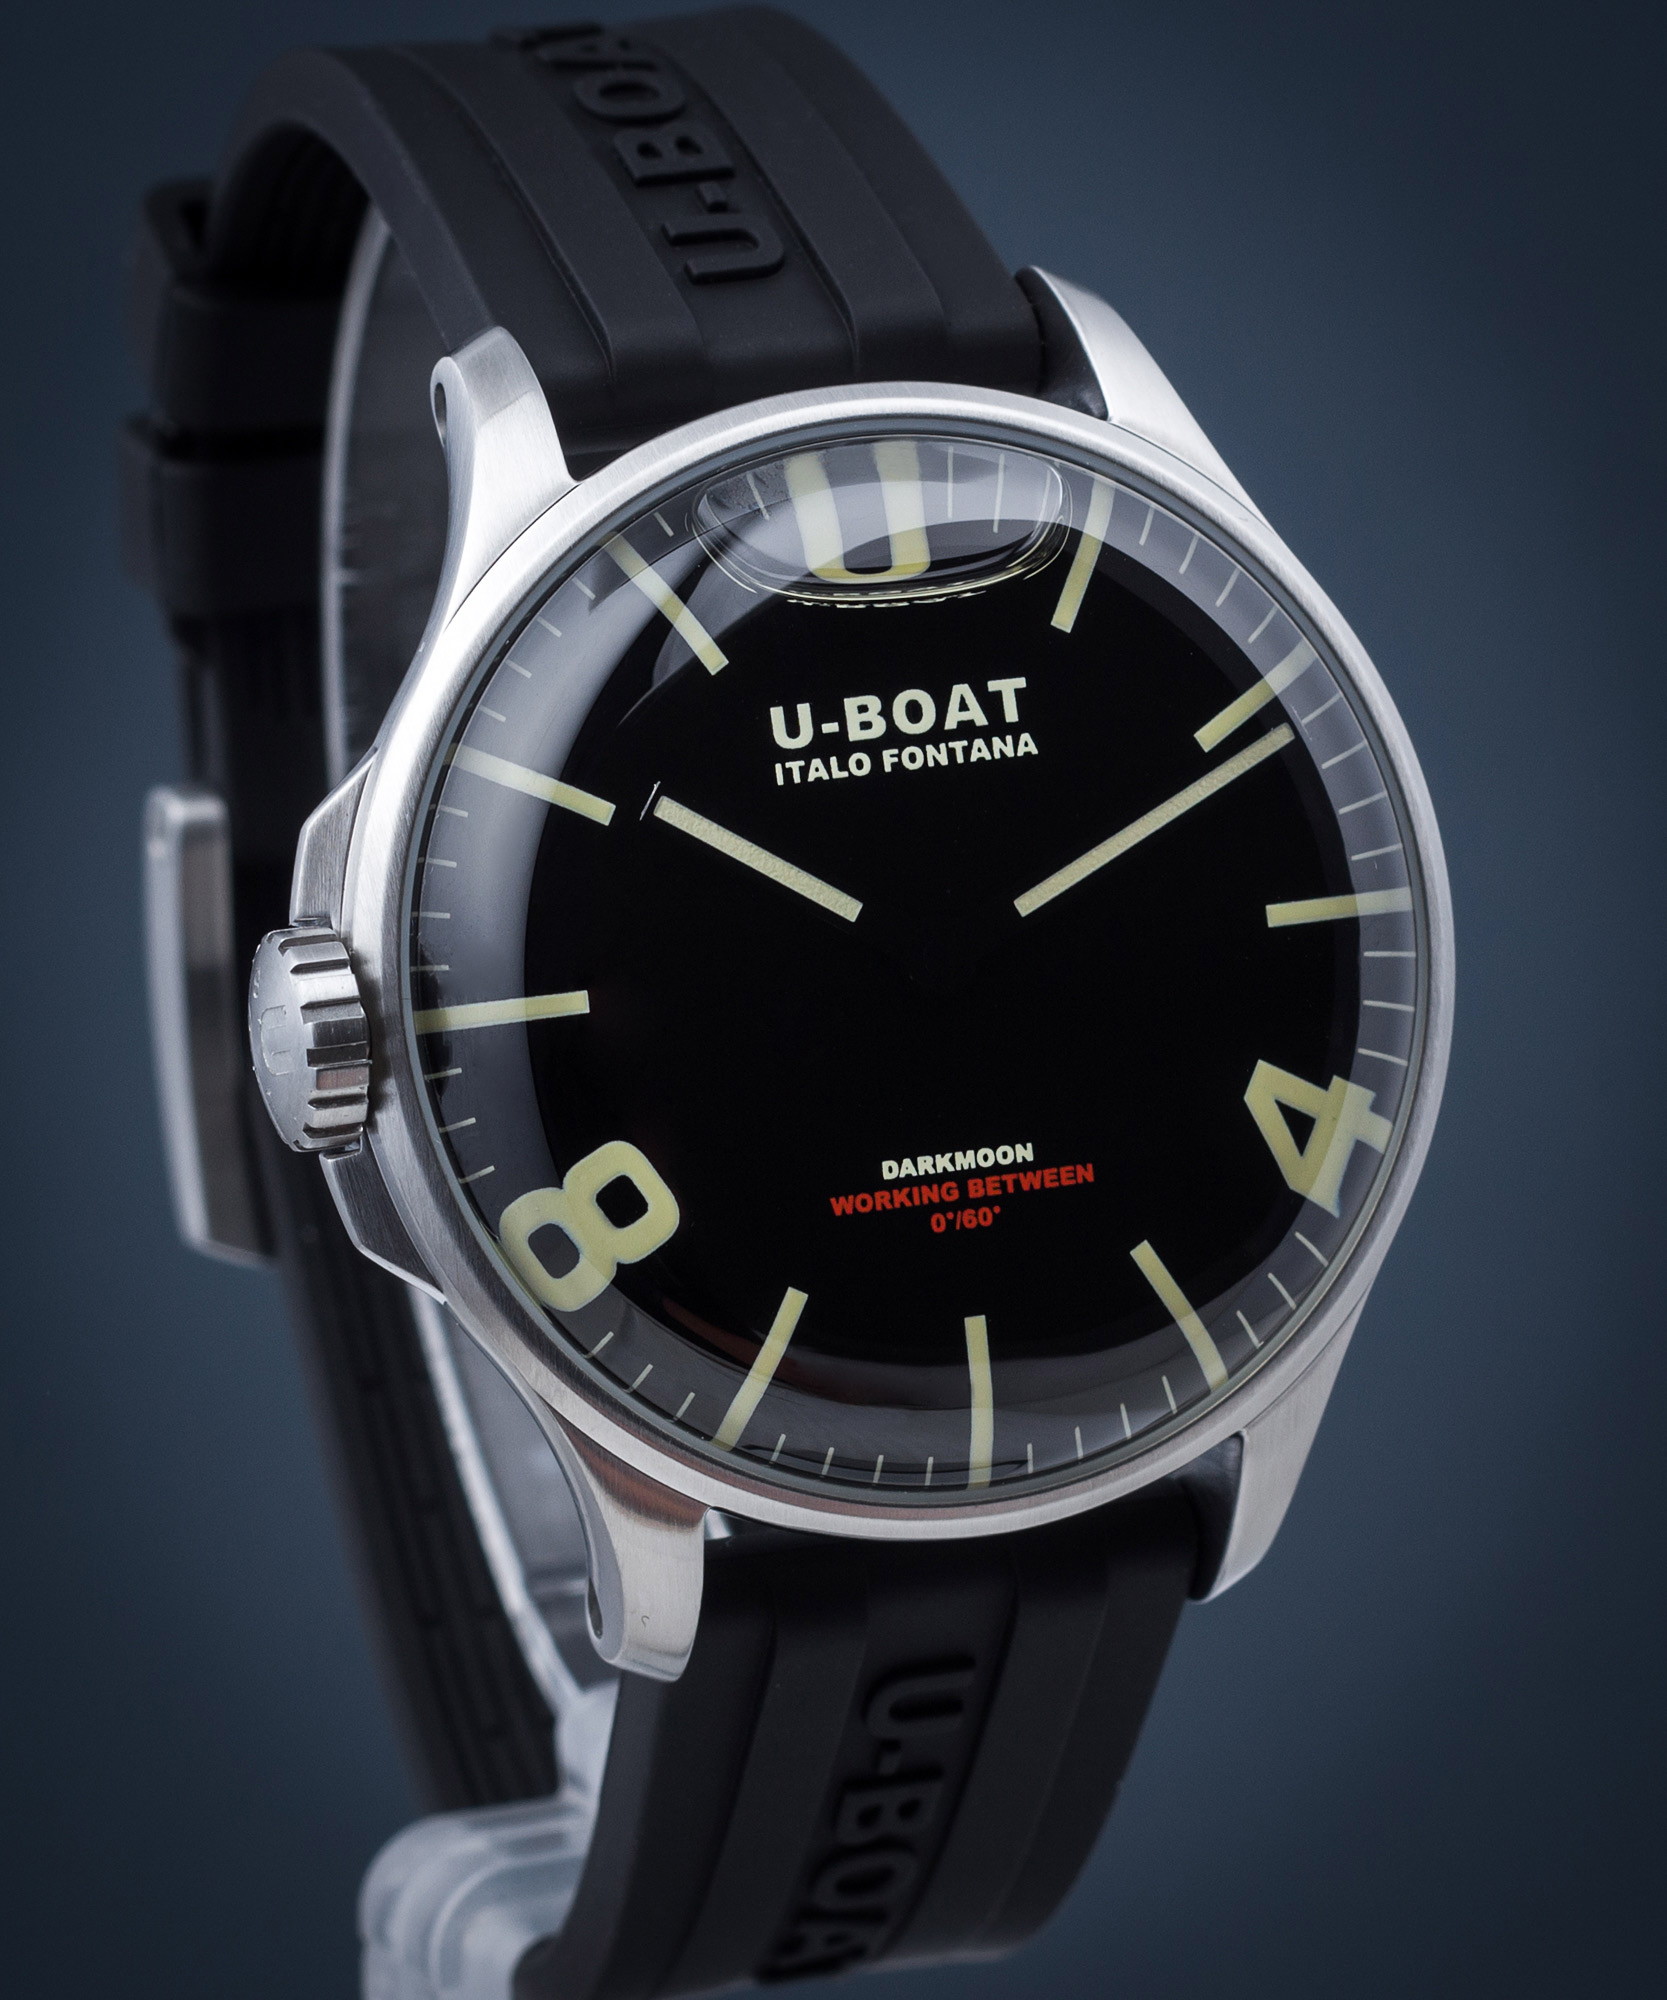 U-BOAT 8463 - Zegarek Darkmoon • Zegarownia.pl